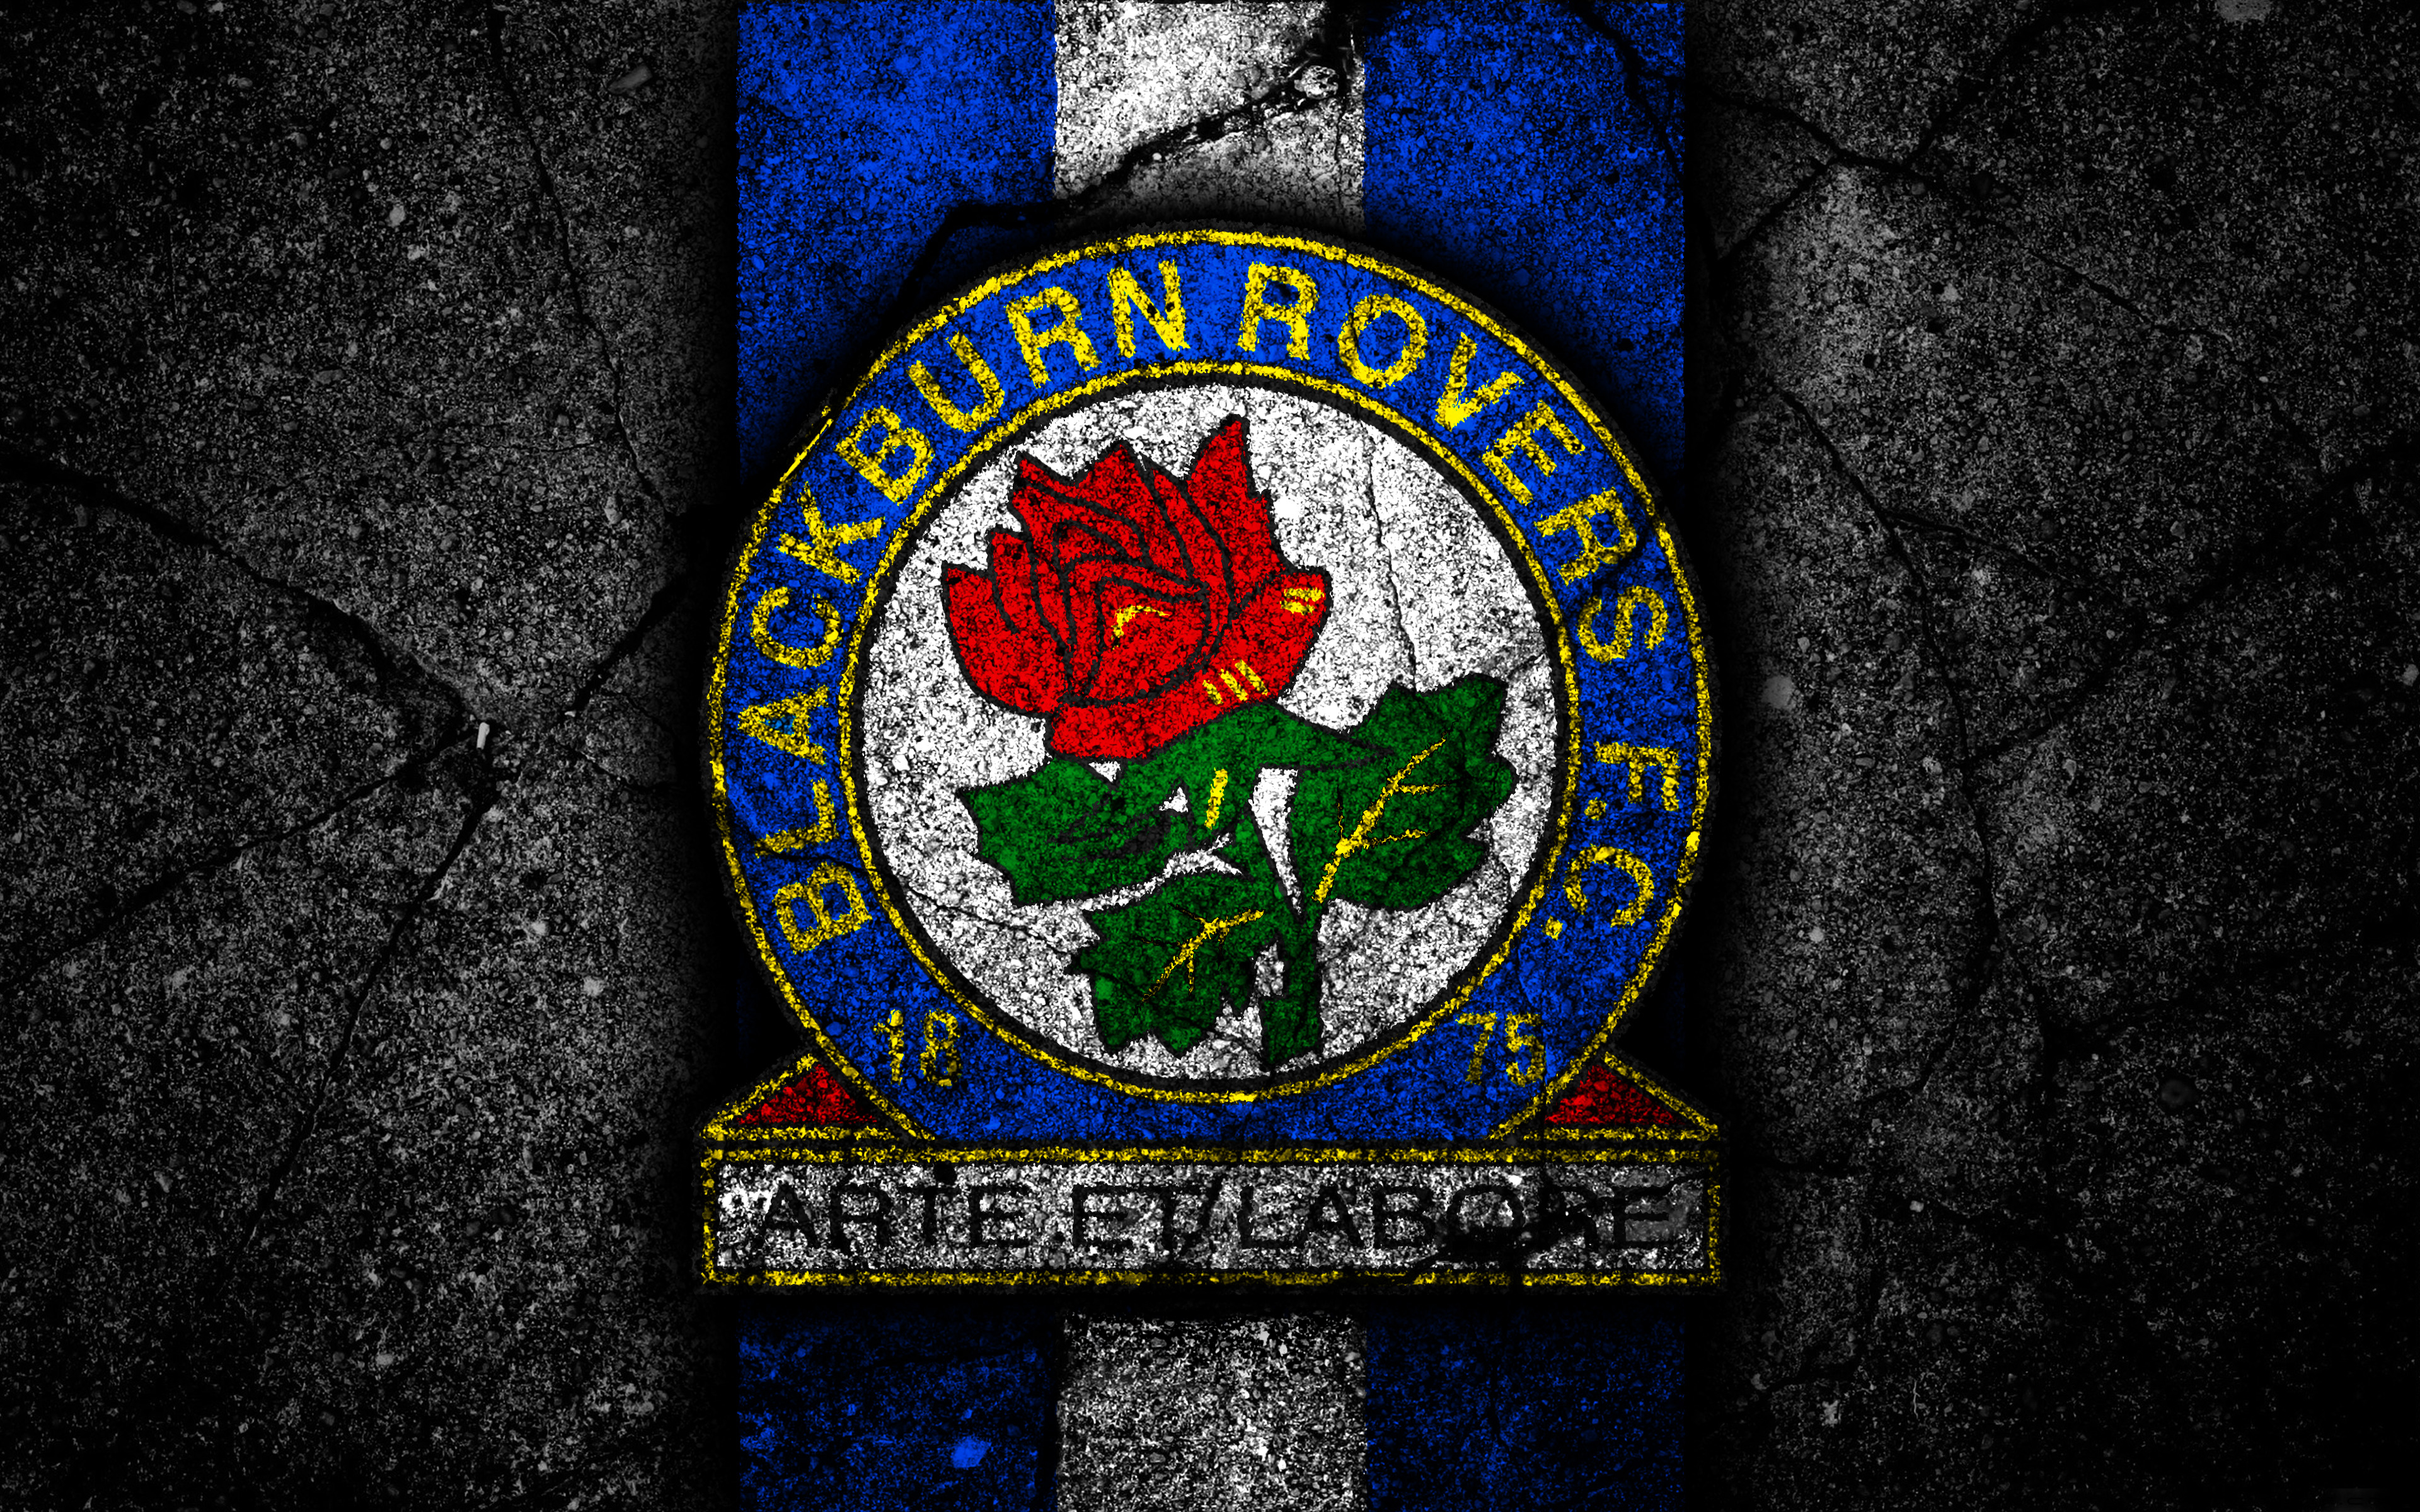 Meilleurs fonds d'écran Blackburn Rovers Fc pour l'écran du téléphone